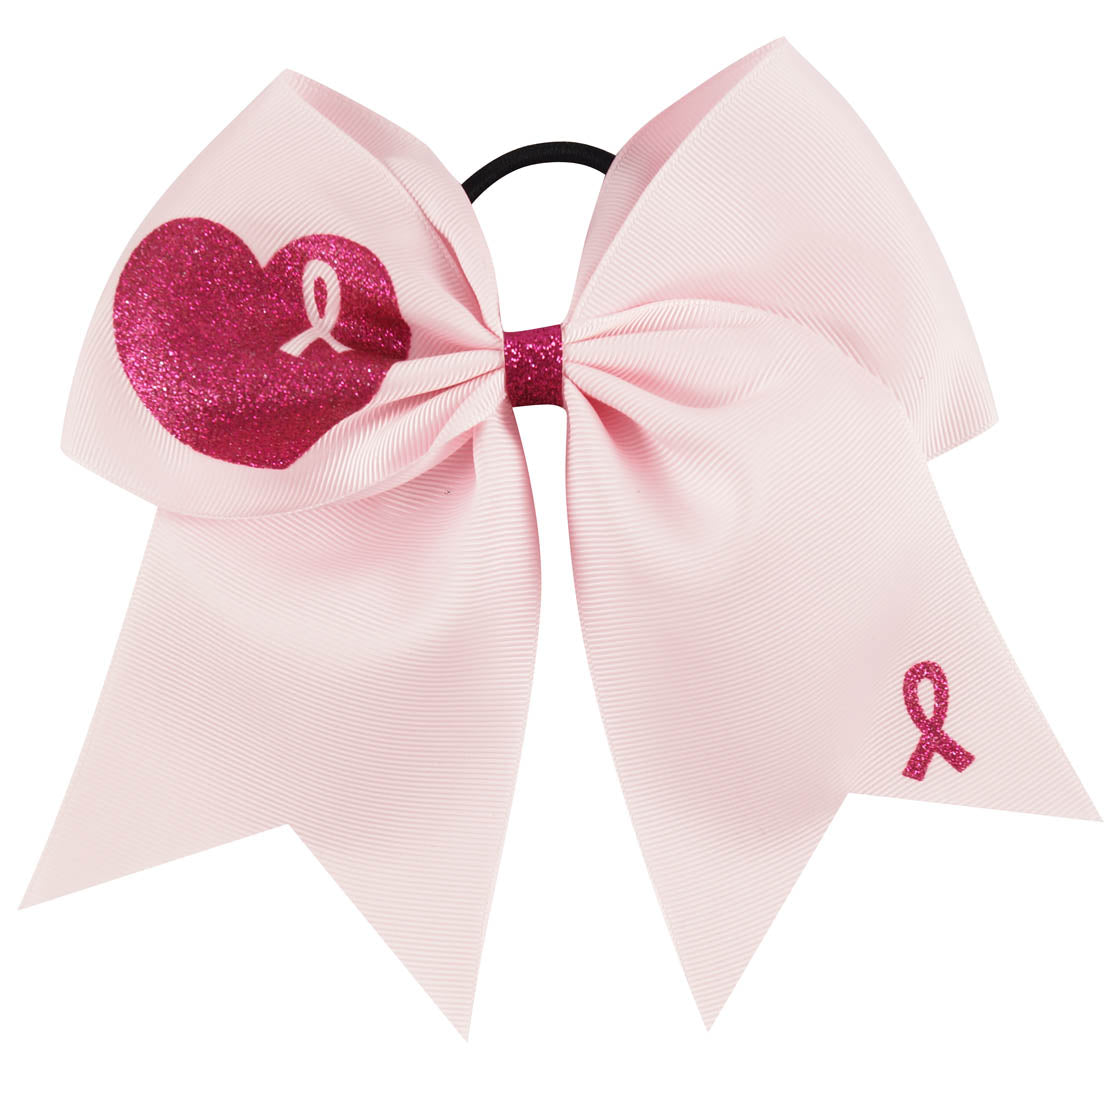 20PCS 7'' Breast Cancer Awareness Cheer Bows